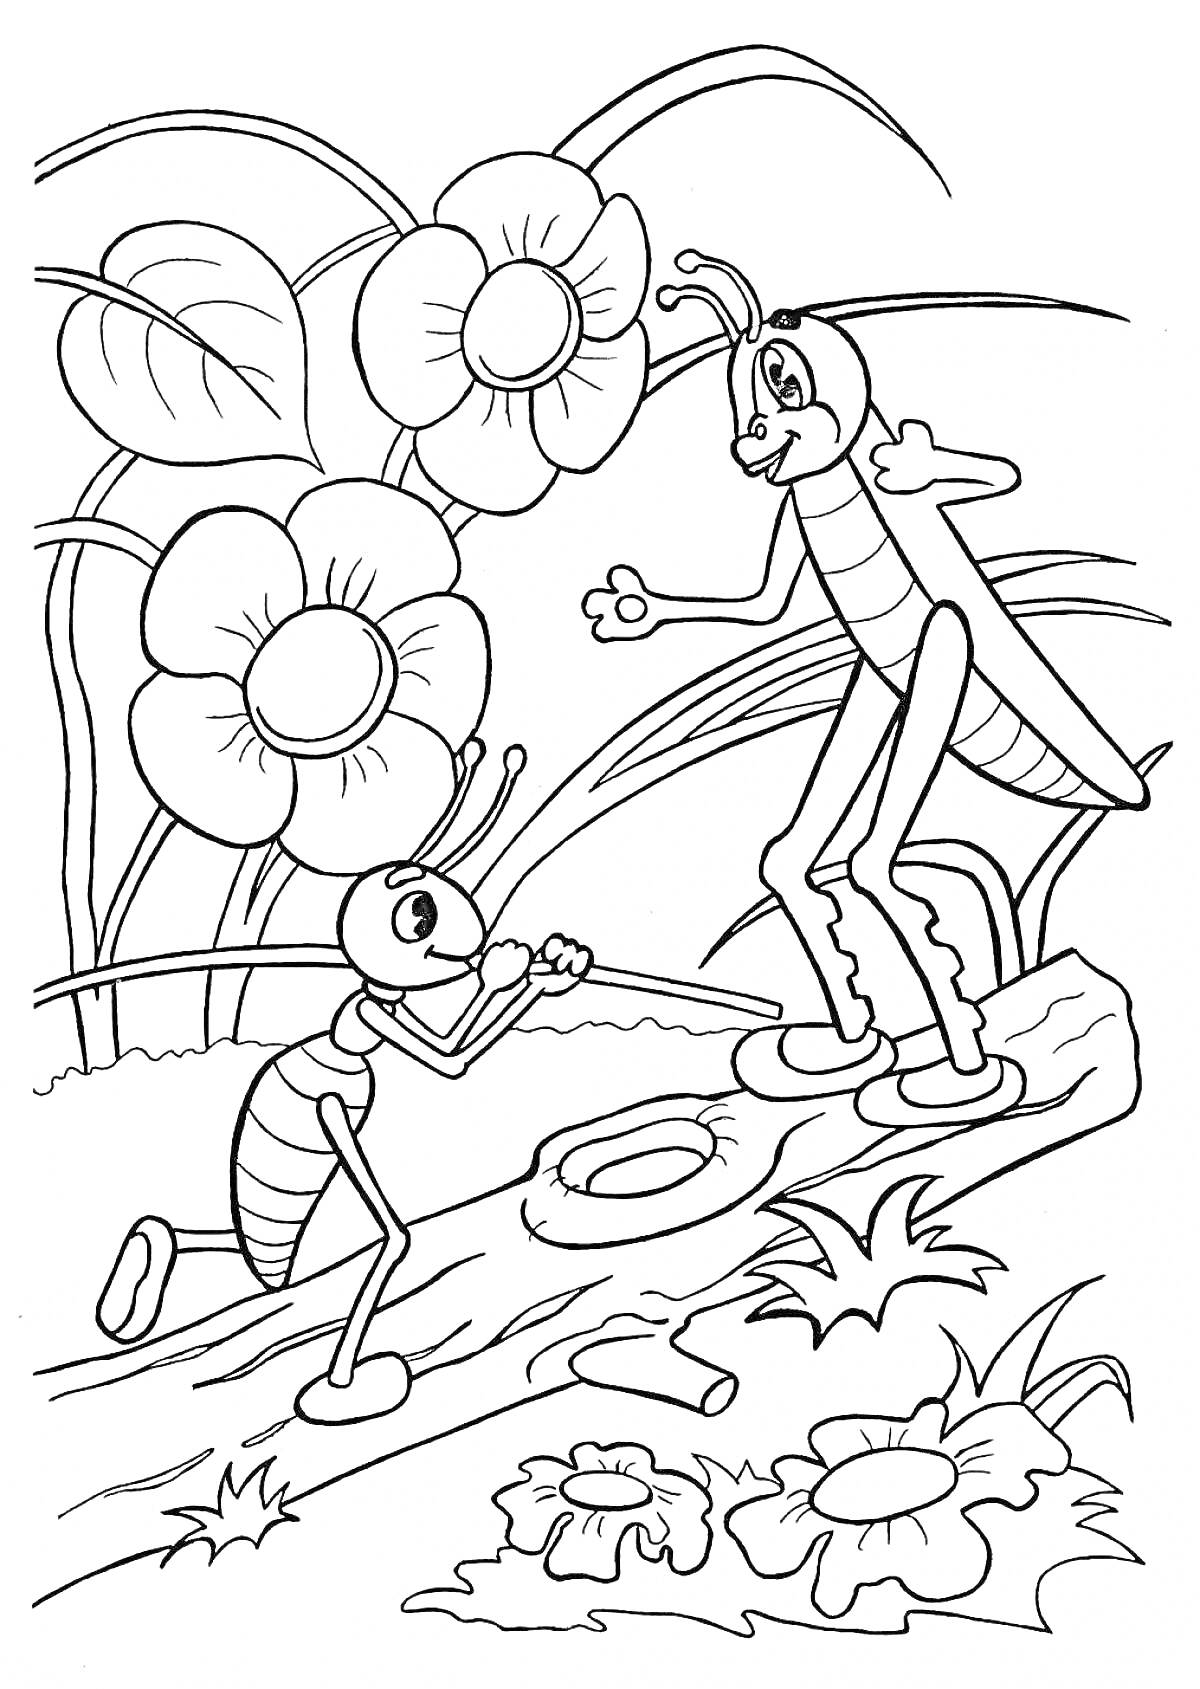 Раскраска Муравей и кузнечик среди цветов и листьев на бревне